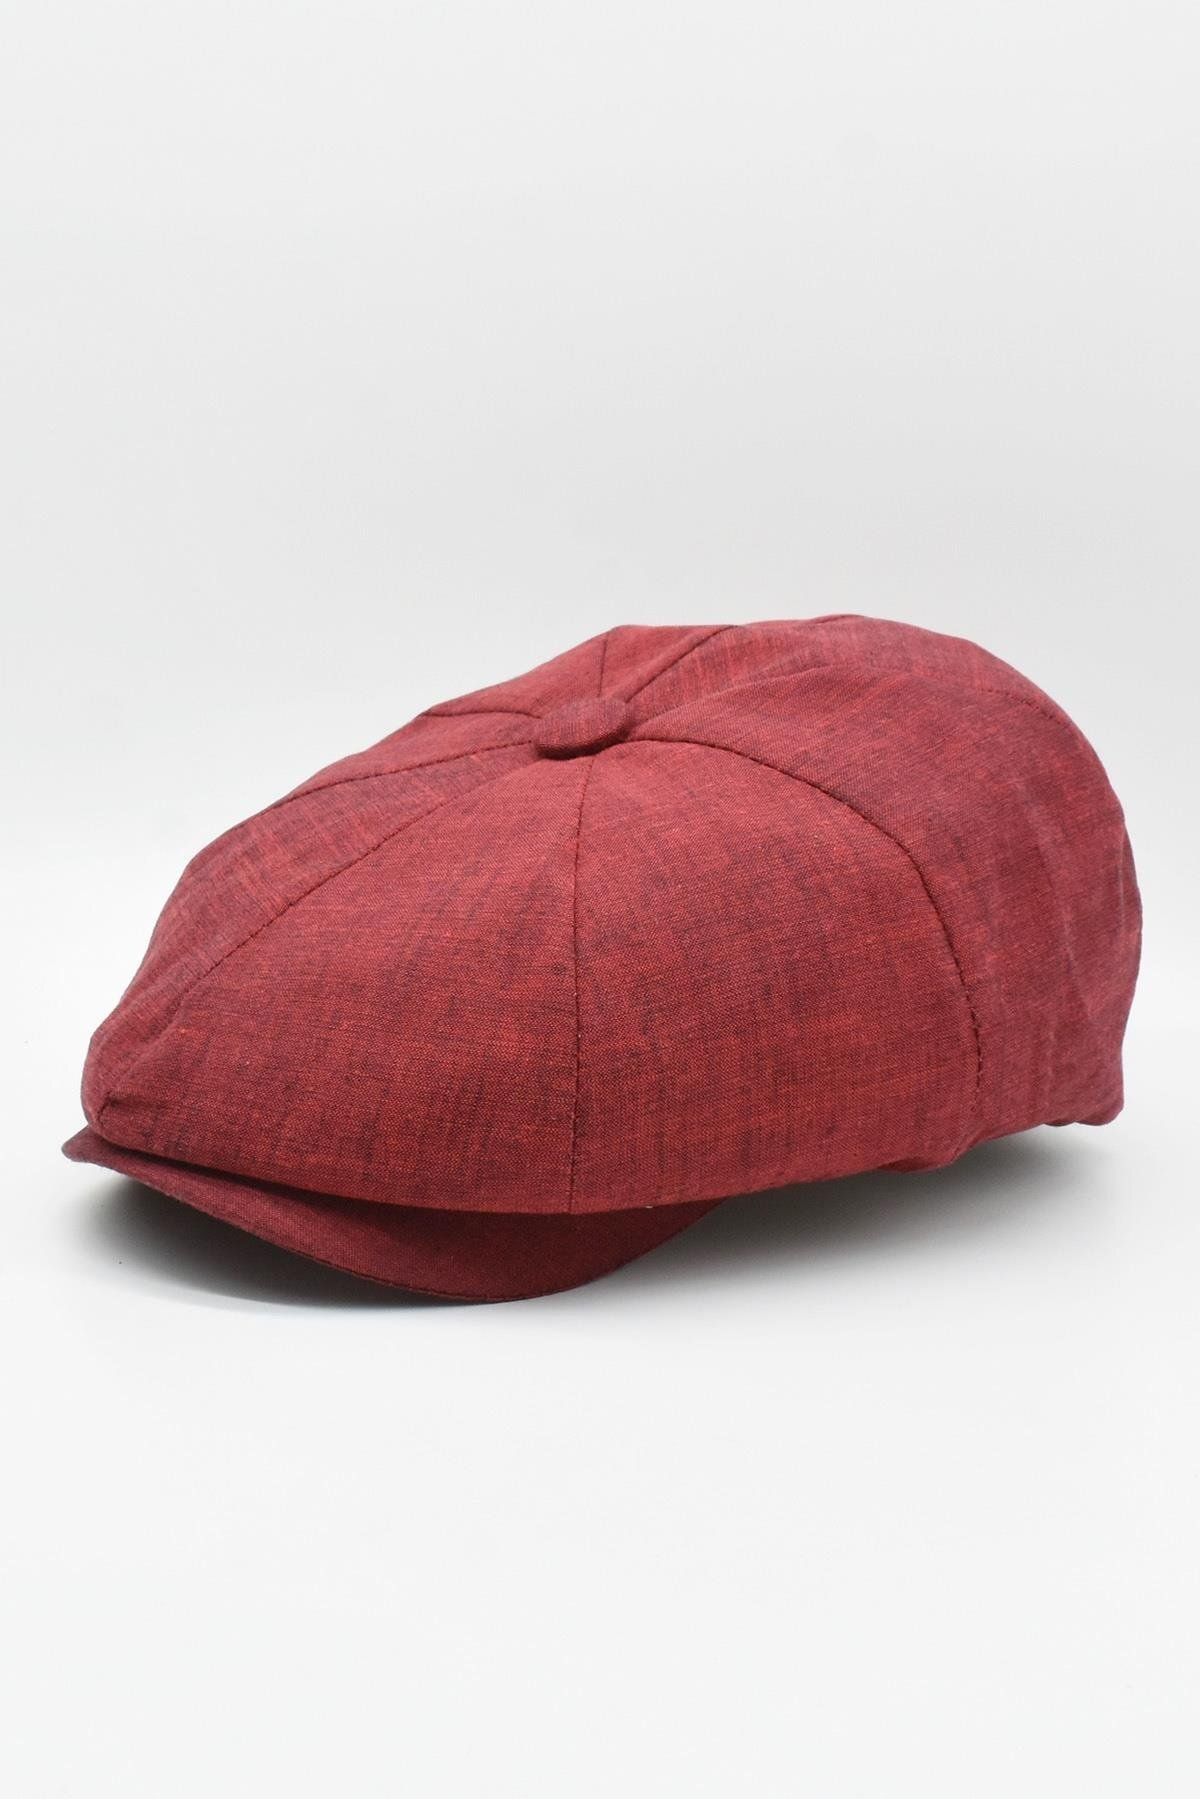 Külah İngiliz Stili London Yazlık Kasket Şapka Bordo